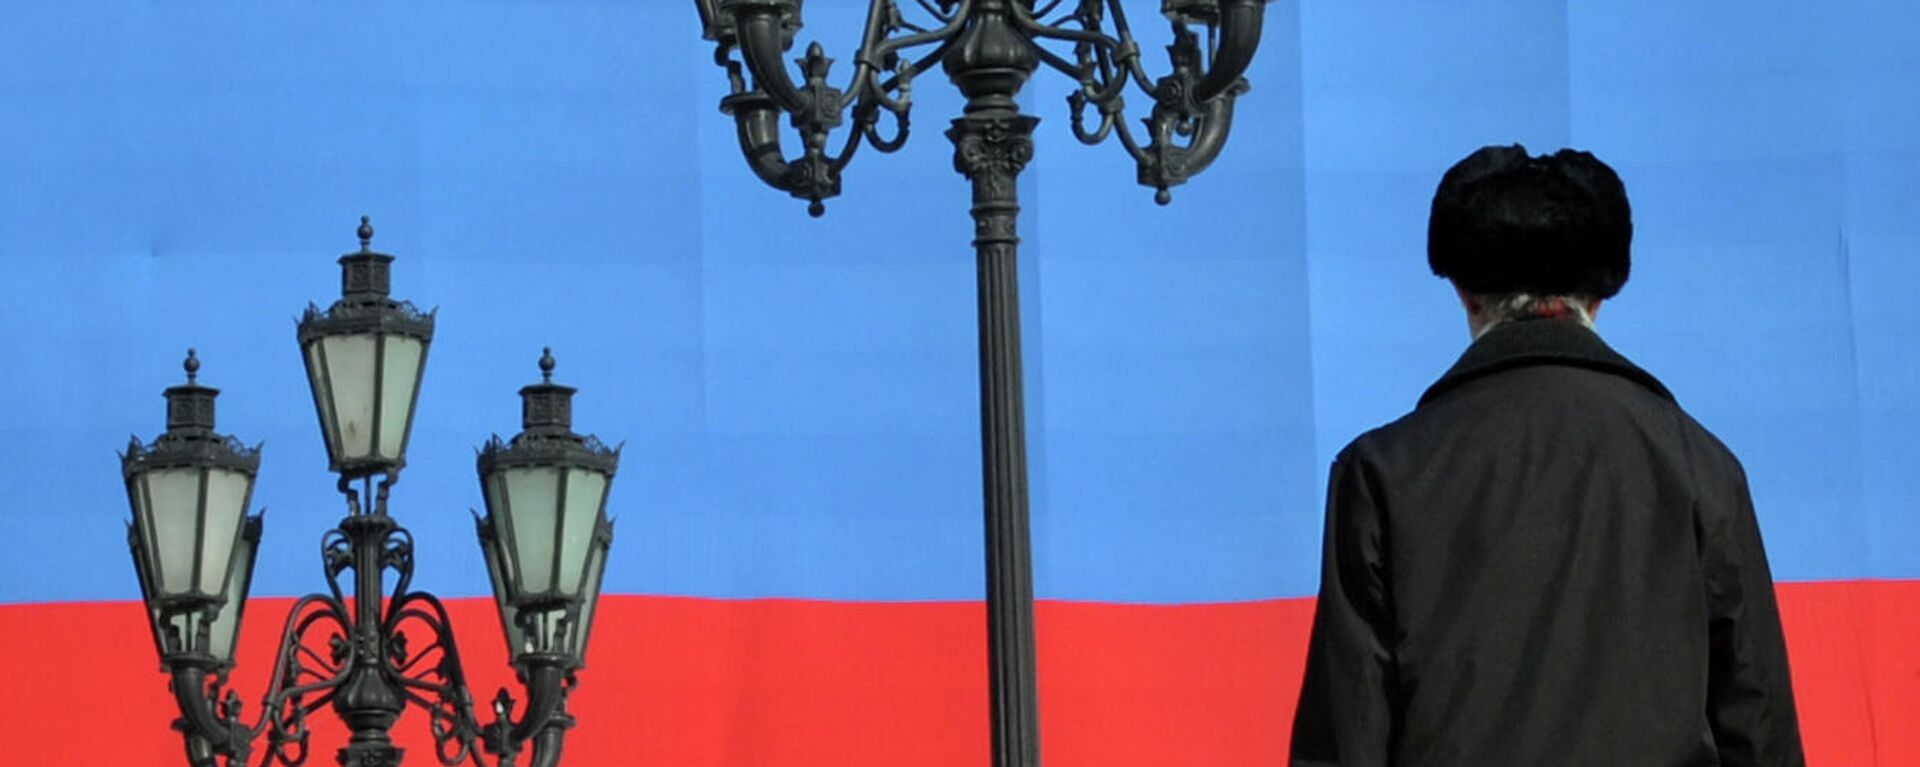 Мужчина на фоне флага России - Sputnik Грузия, 1920, 09.11.2021